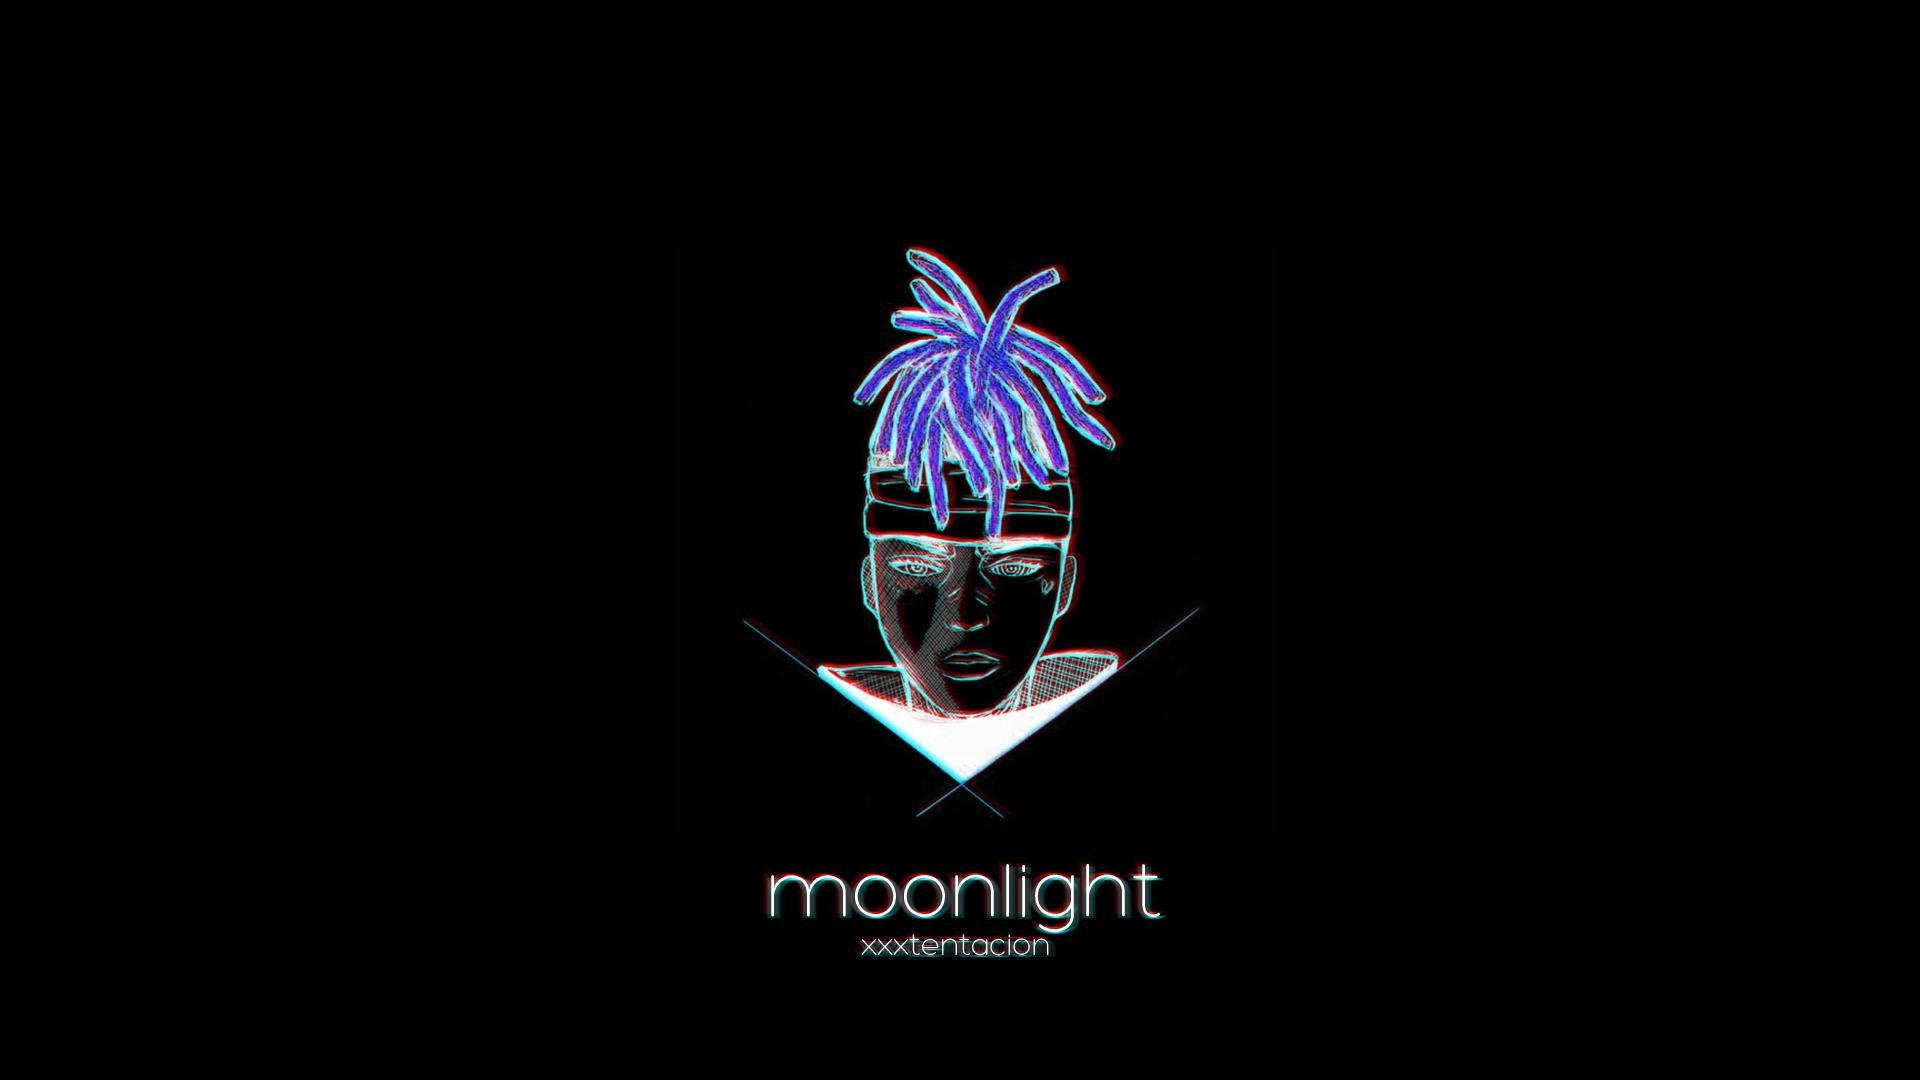 Moonlight Xxtxtentacion Official Lyrics